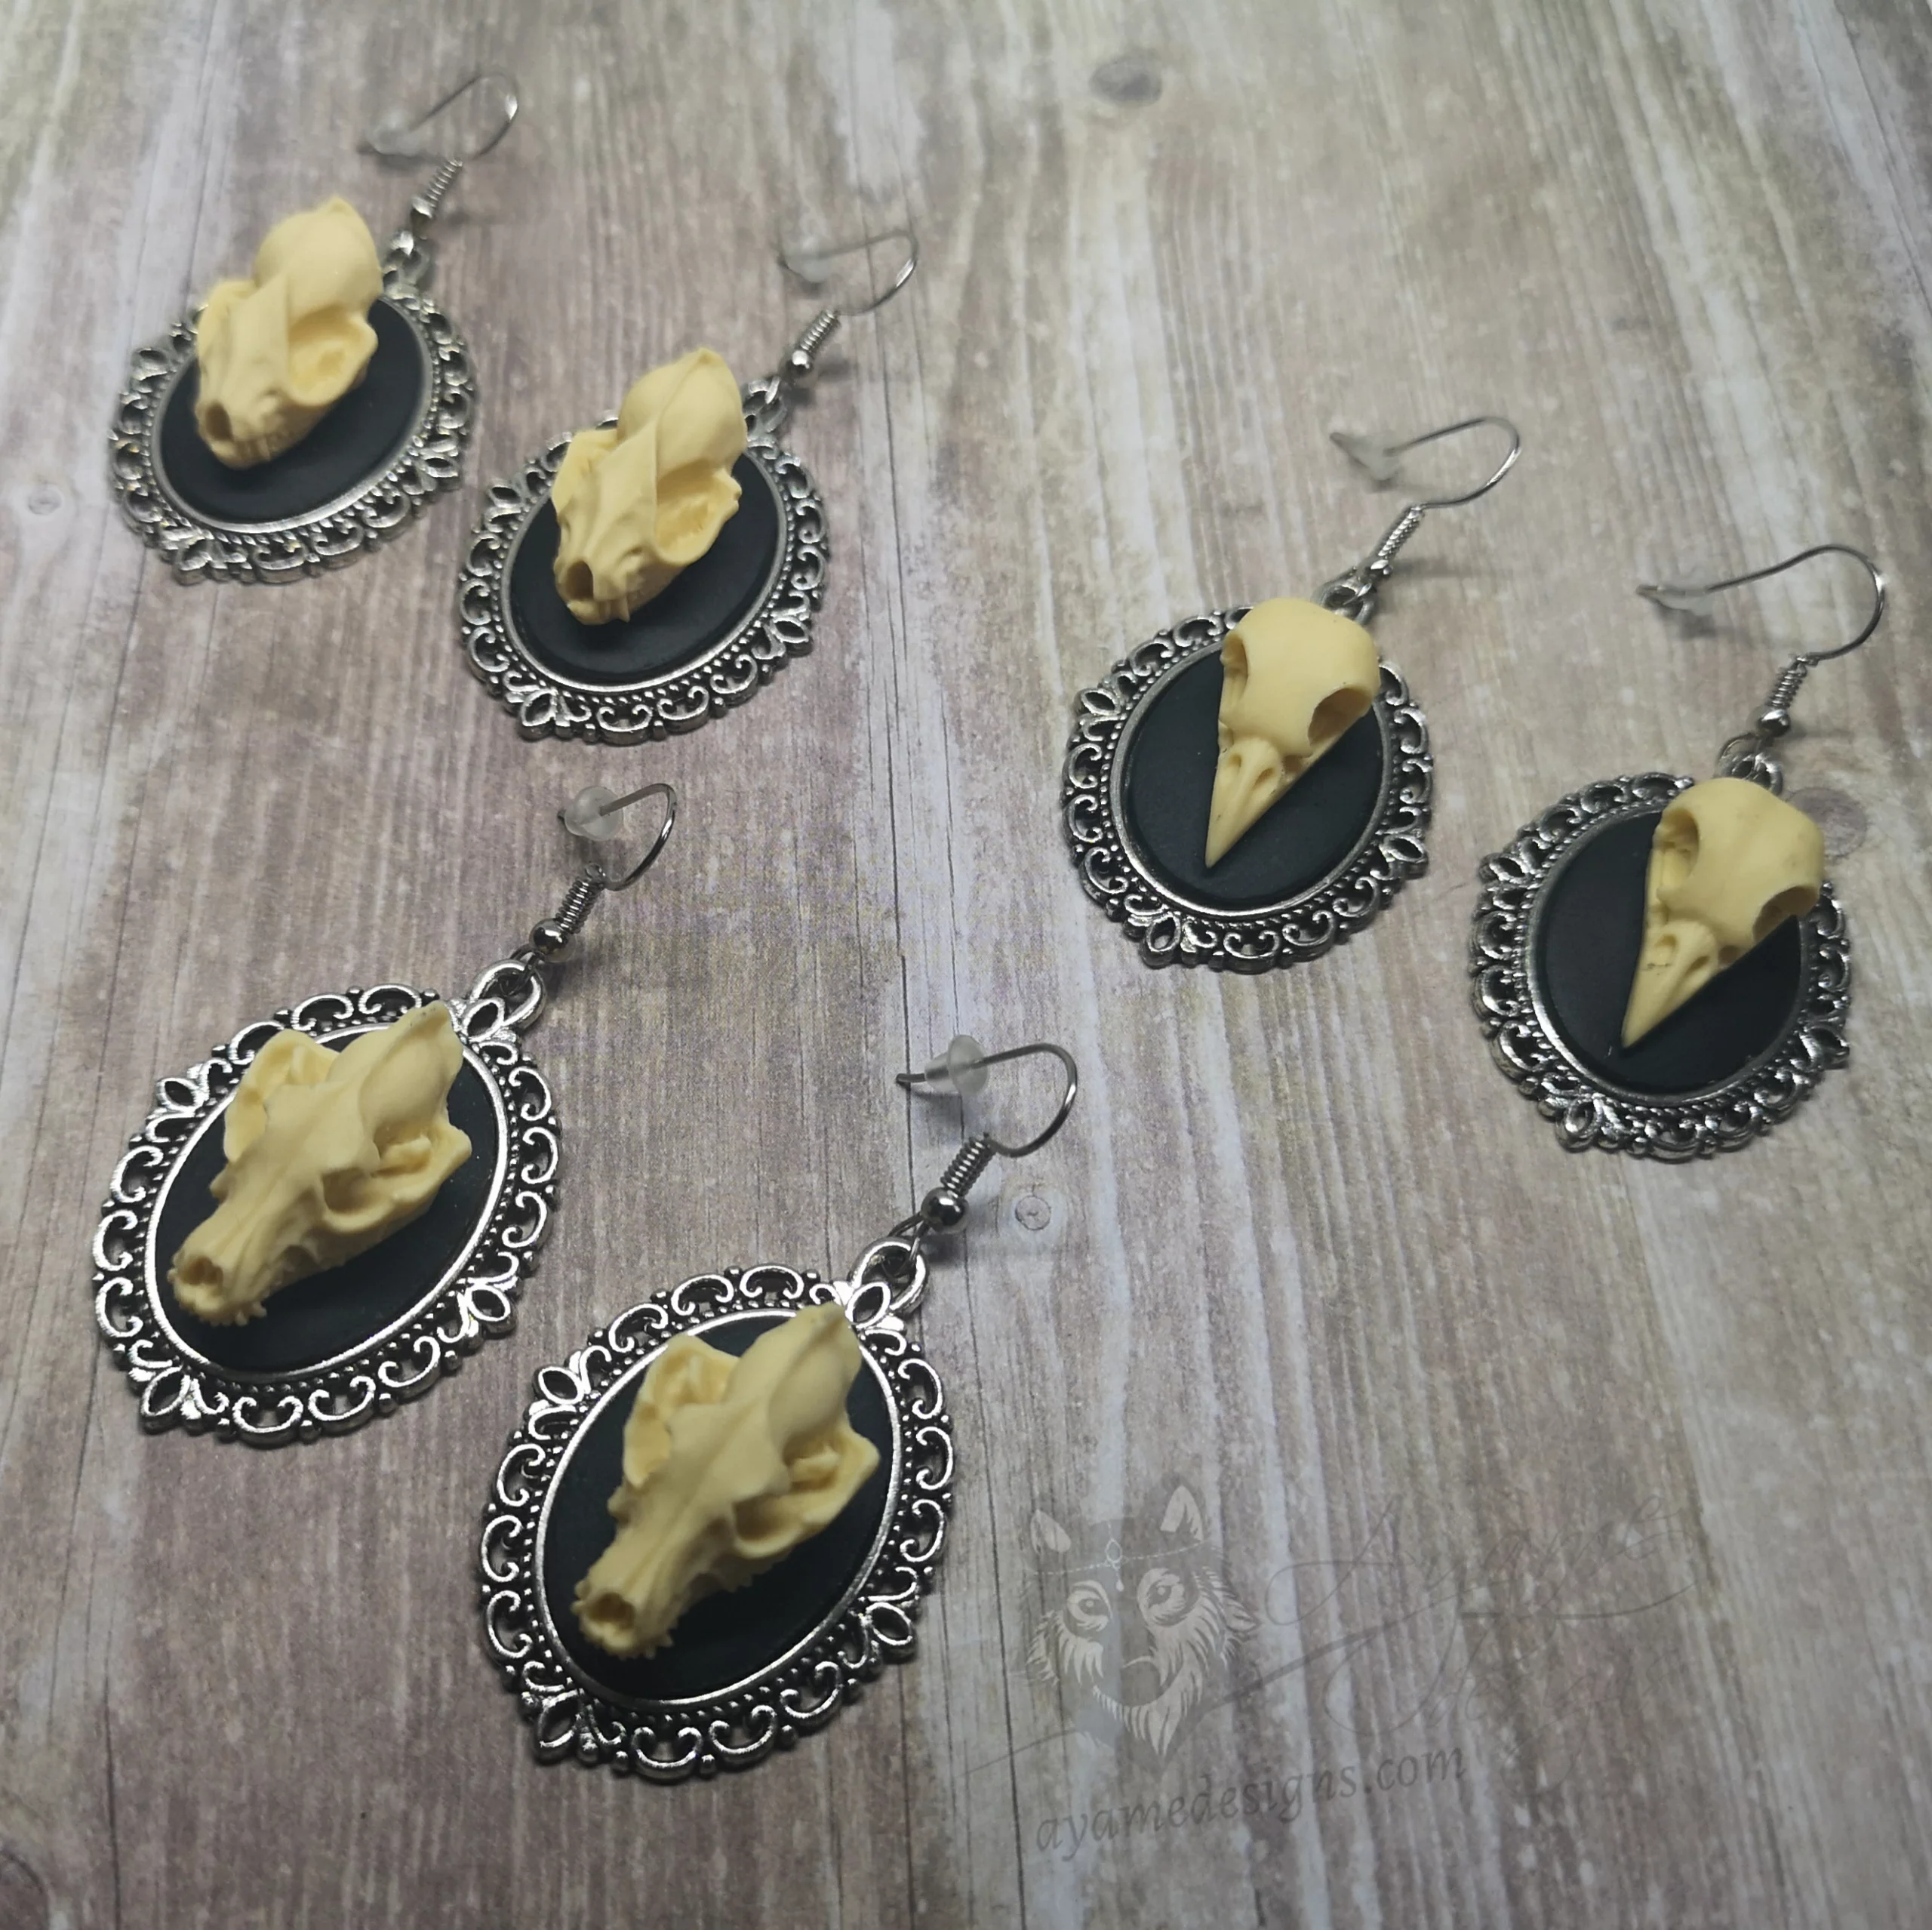 Handmade gothic earrings with resin animal skulls in filigree frames on stainless steel earring hooks